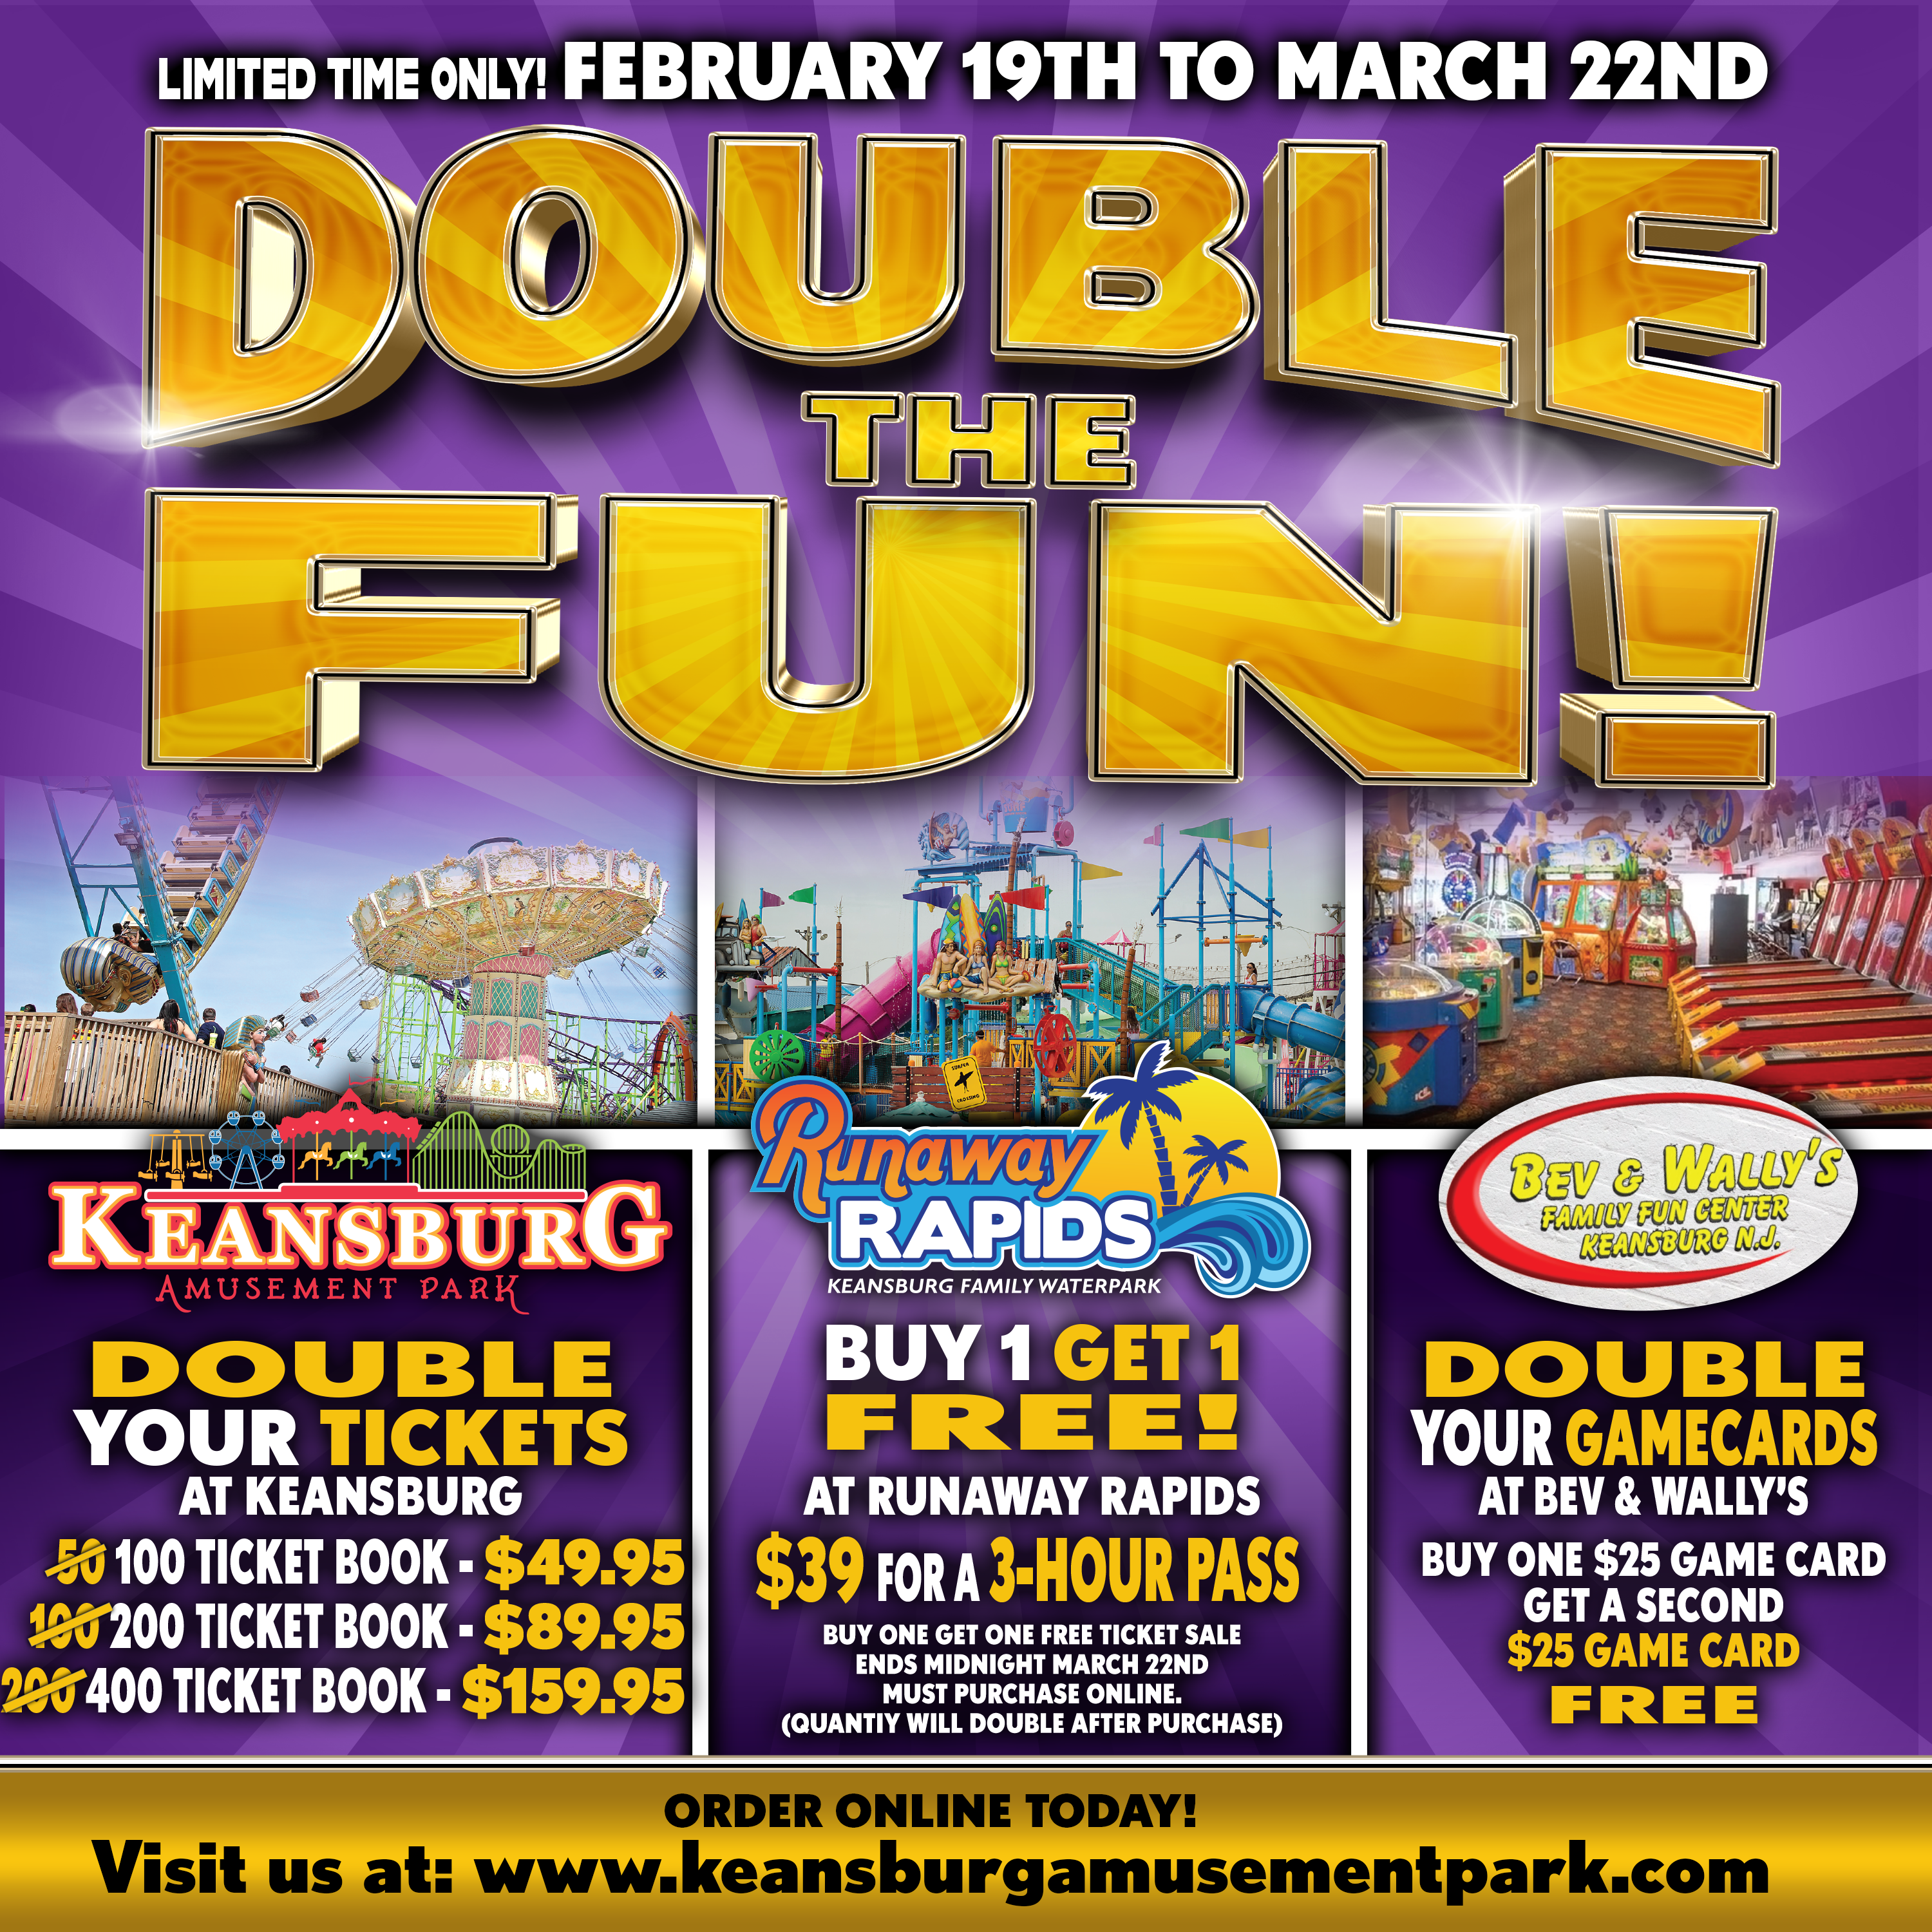 Keansburg Amusement Park Double the Fun special